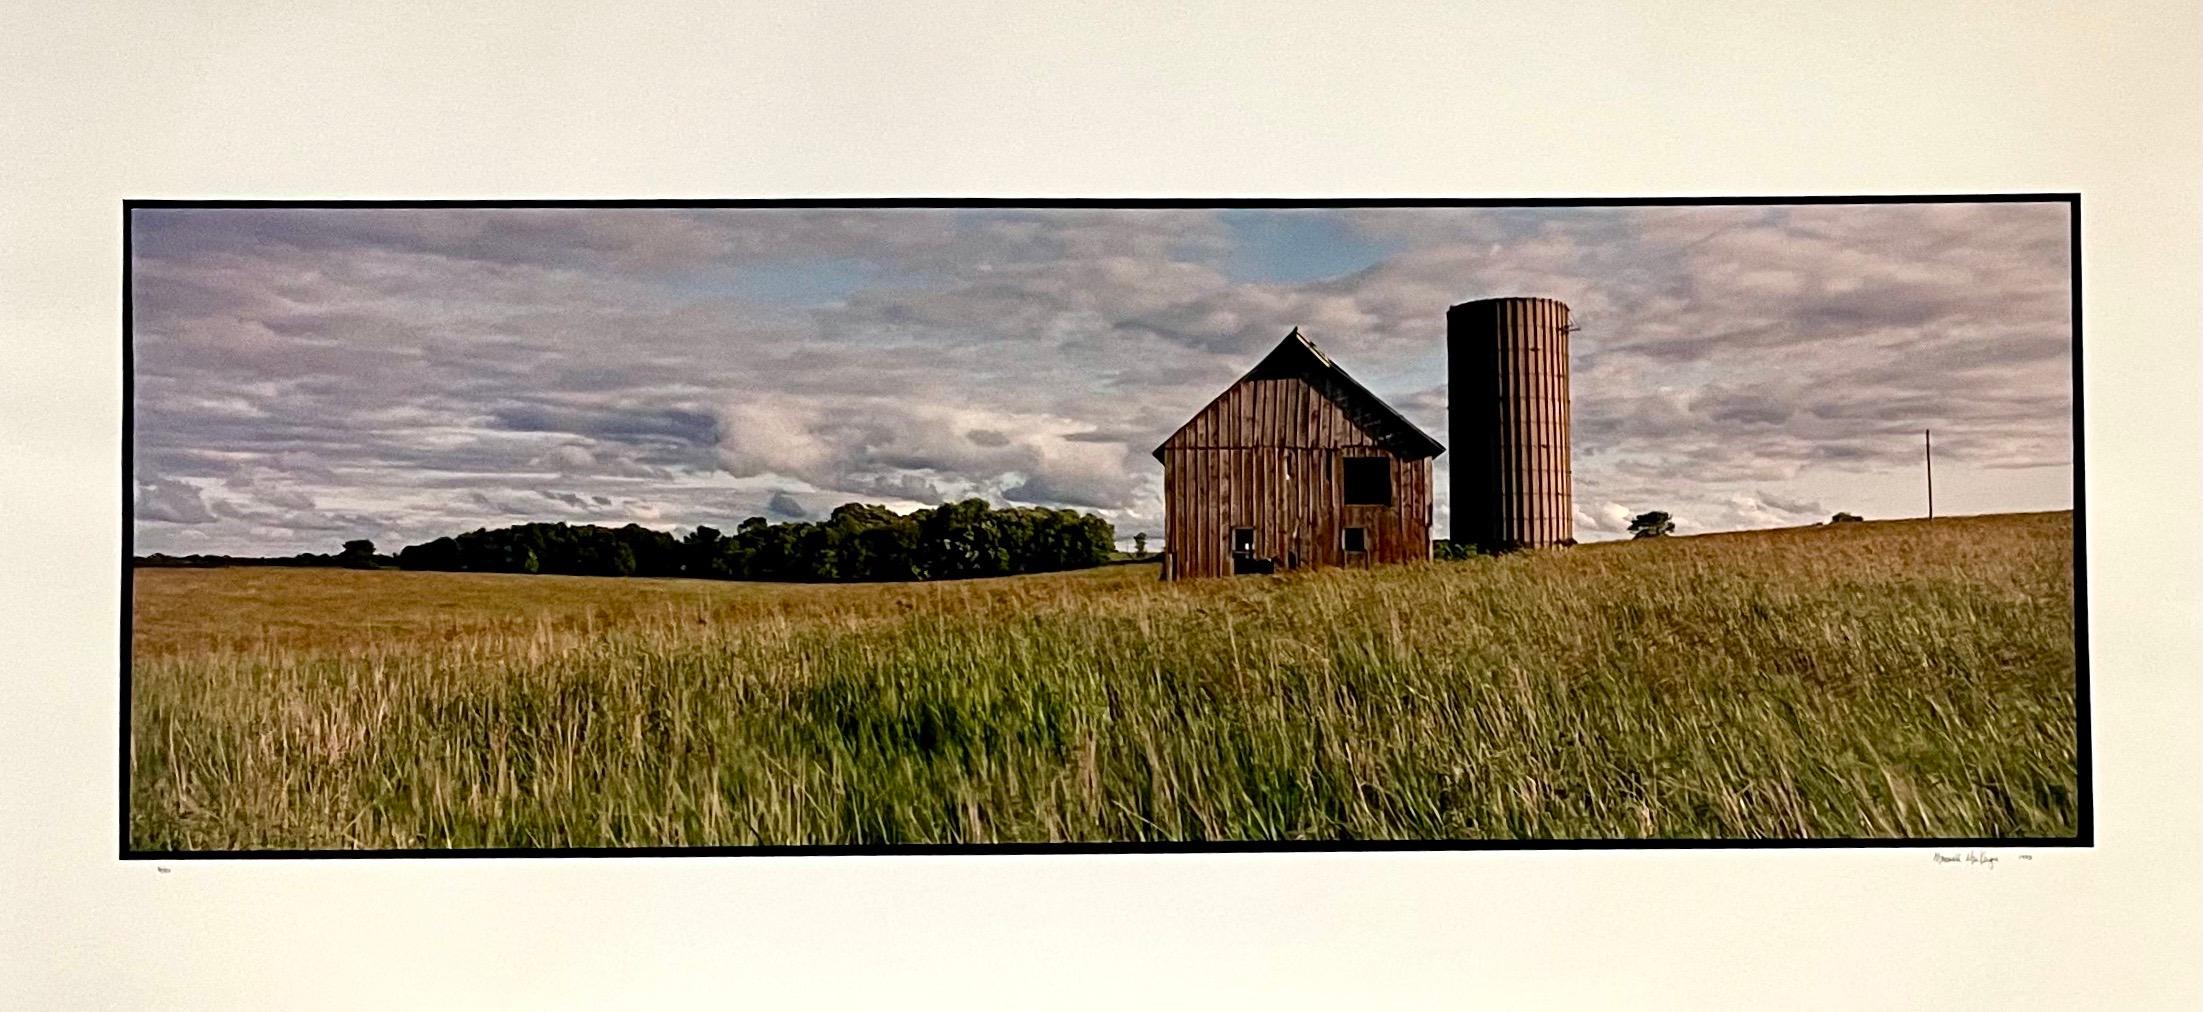 Color Photograph Maxwell Mackenzie - La ferme, paysage d'été, grande photographie Panoramique couleur vintage signée